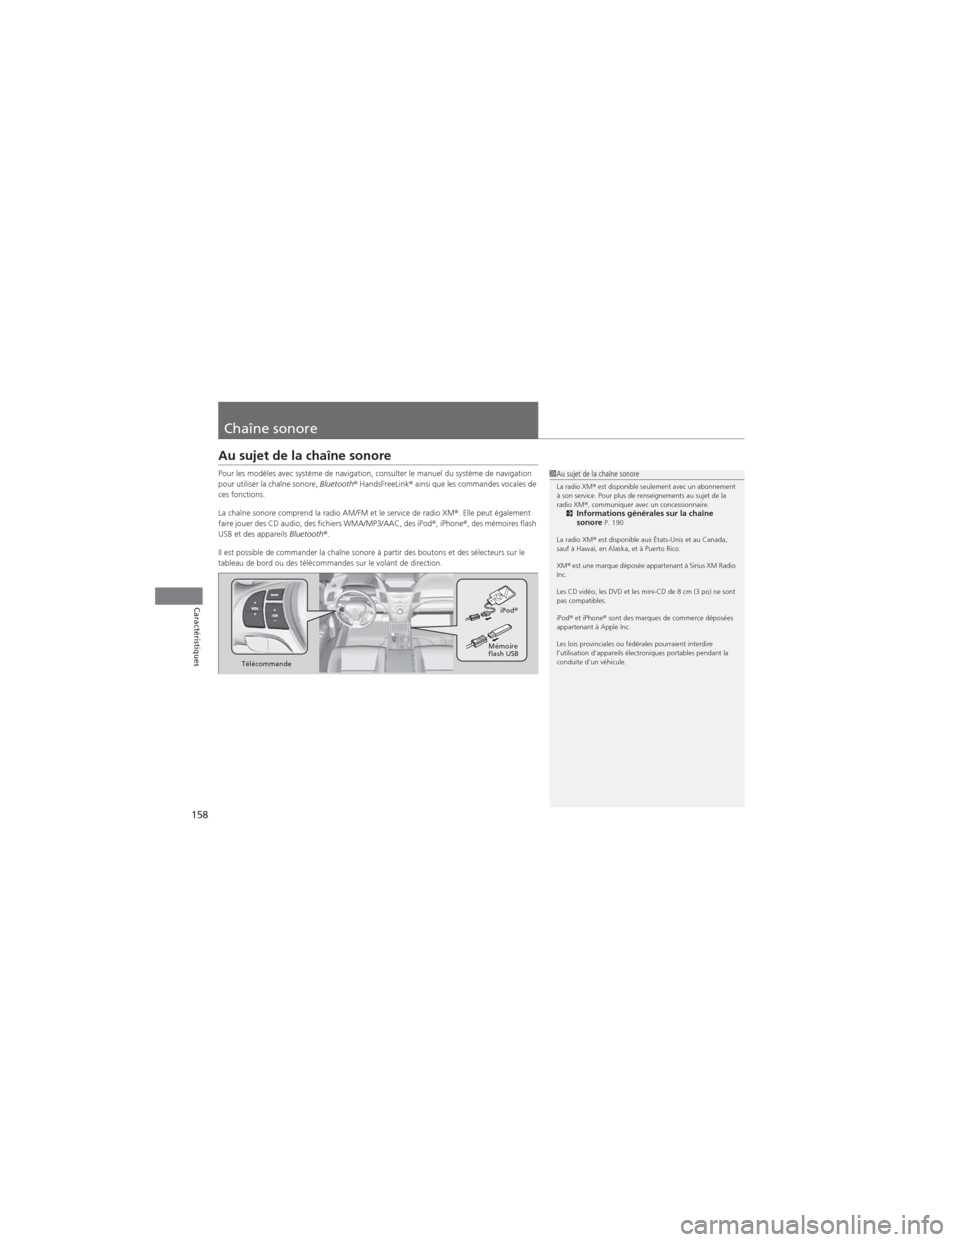 Acura RDX 2013  Manuel du propriétaire (in French) 158
Caractéristiques
Chaîne sonore
Au sujet de la chaîne sonore
Pour les modèles avec système de navigation, consulter le manuel du système de navigation 
pour utiliser la chaîne sonore, Blueto